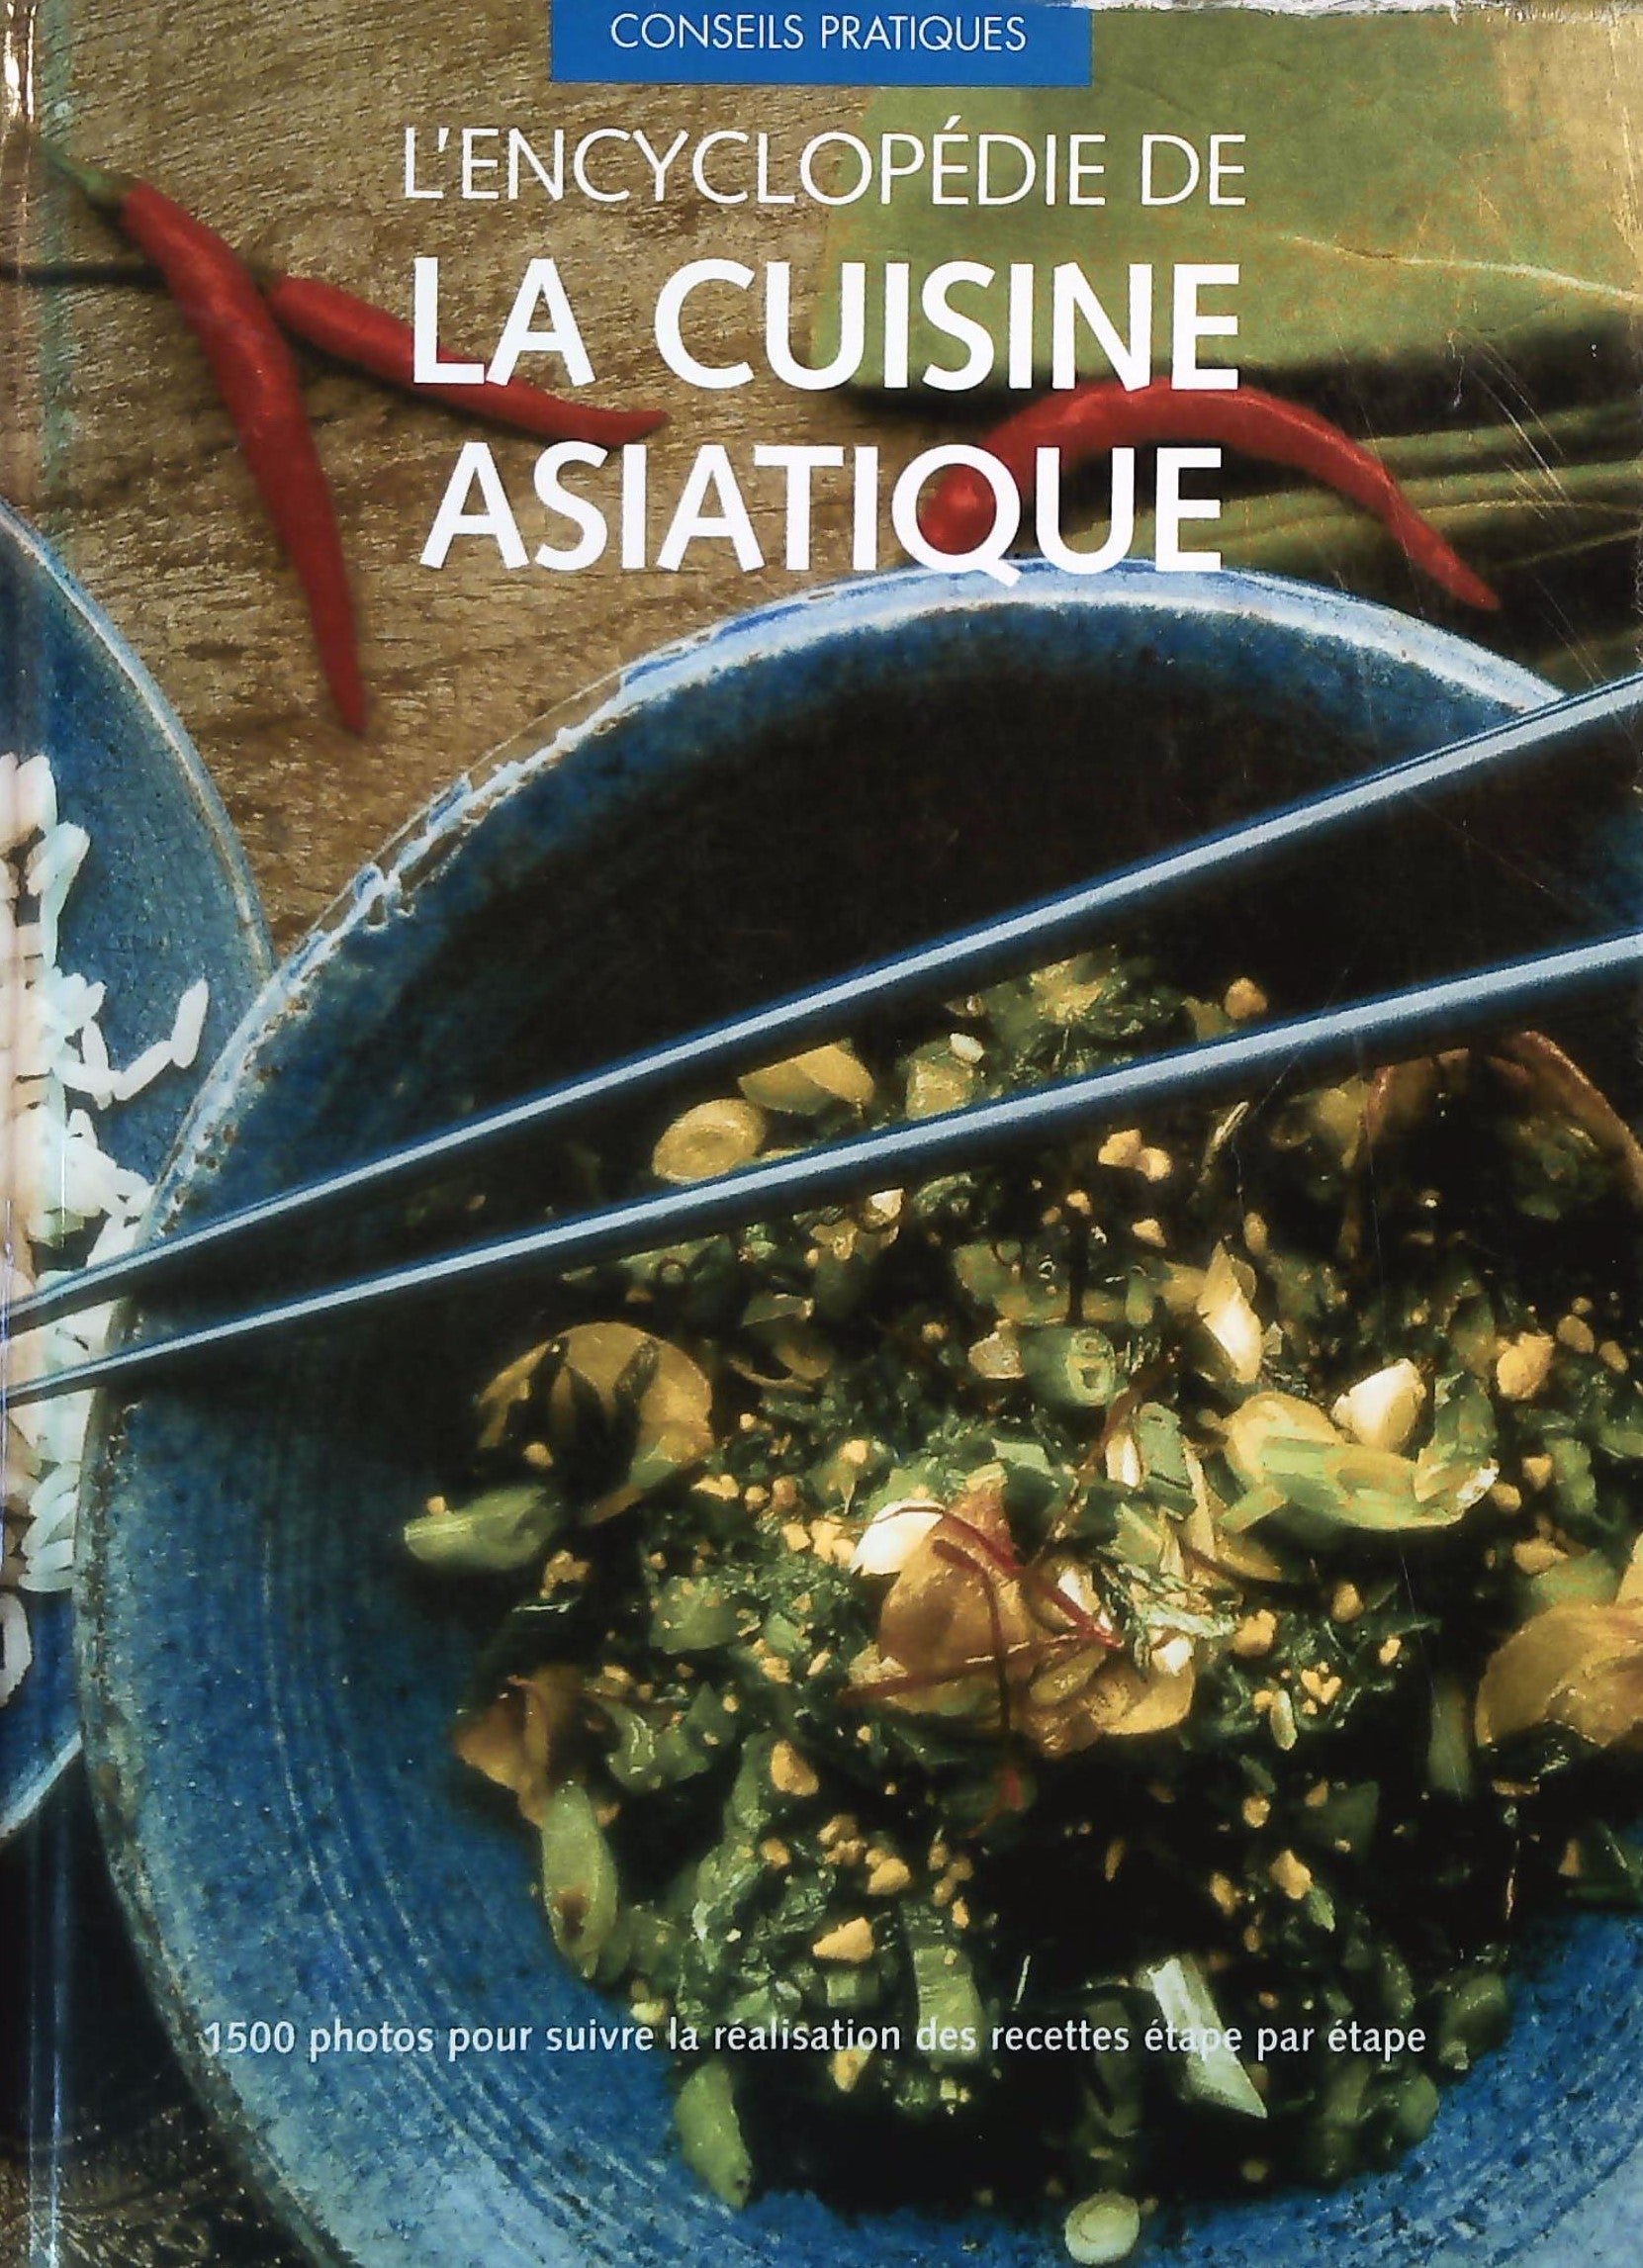 La cuisine asiatique facile - Livre de Collectif